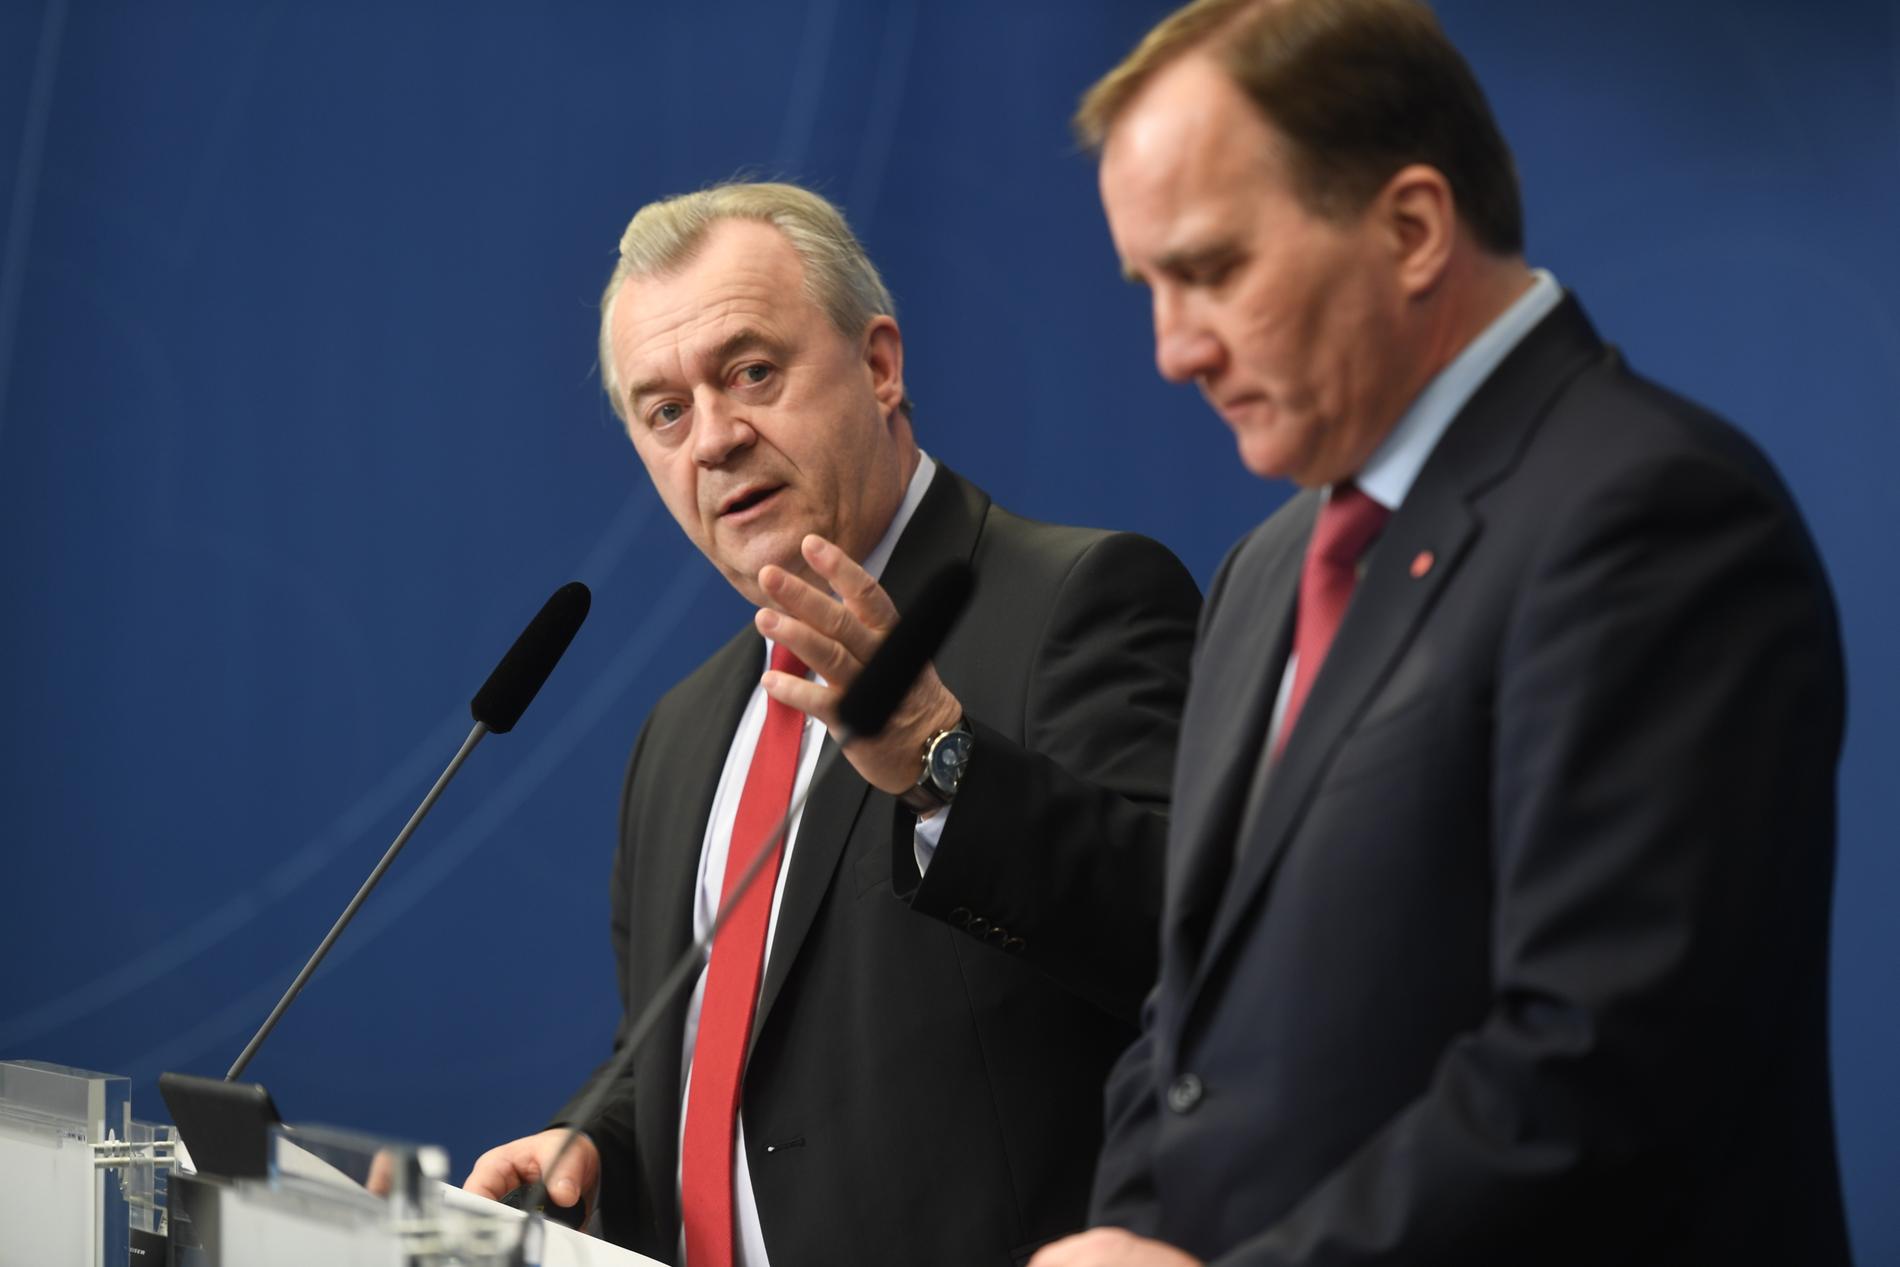 Landsbygdsminister Sven-Erik Bucht och statsminister Stefan Löfven (S) håller pressträff på Rosenbad om landsbygdspolitiken.